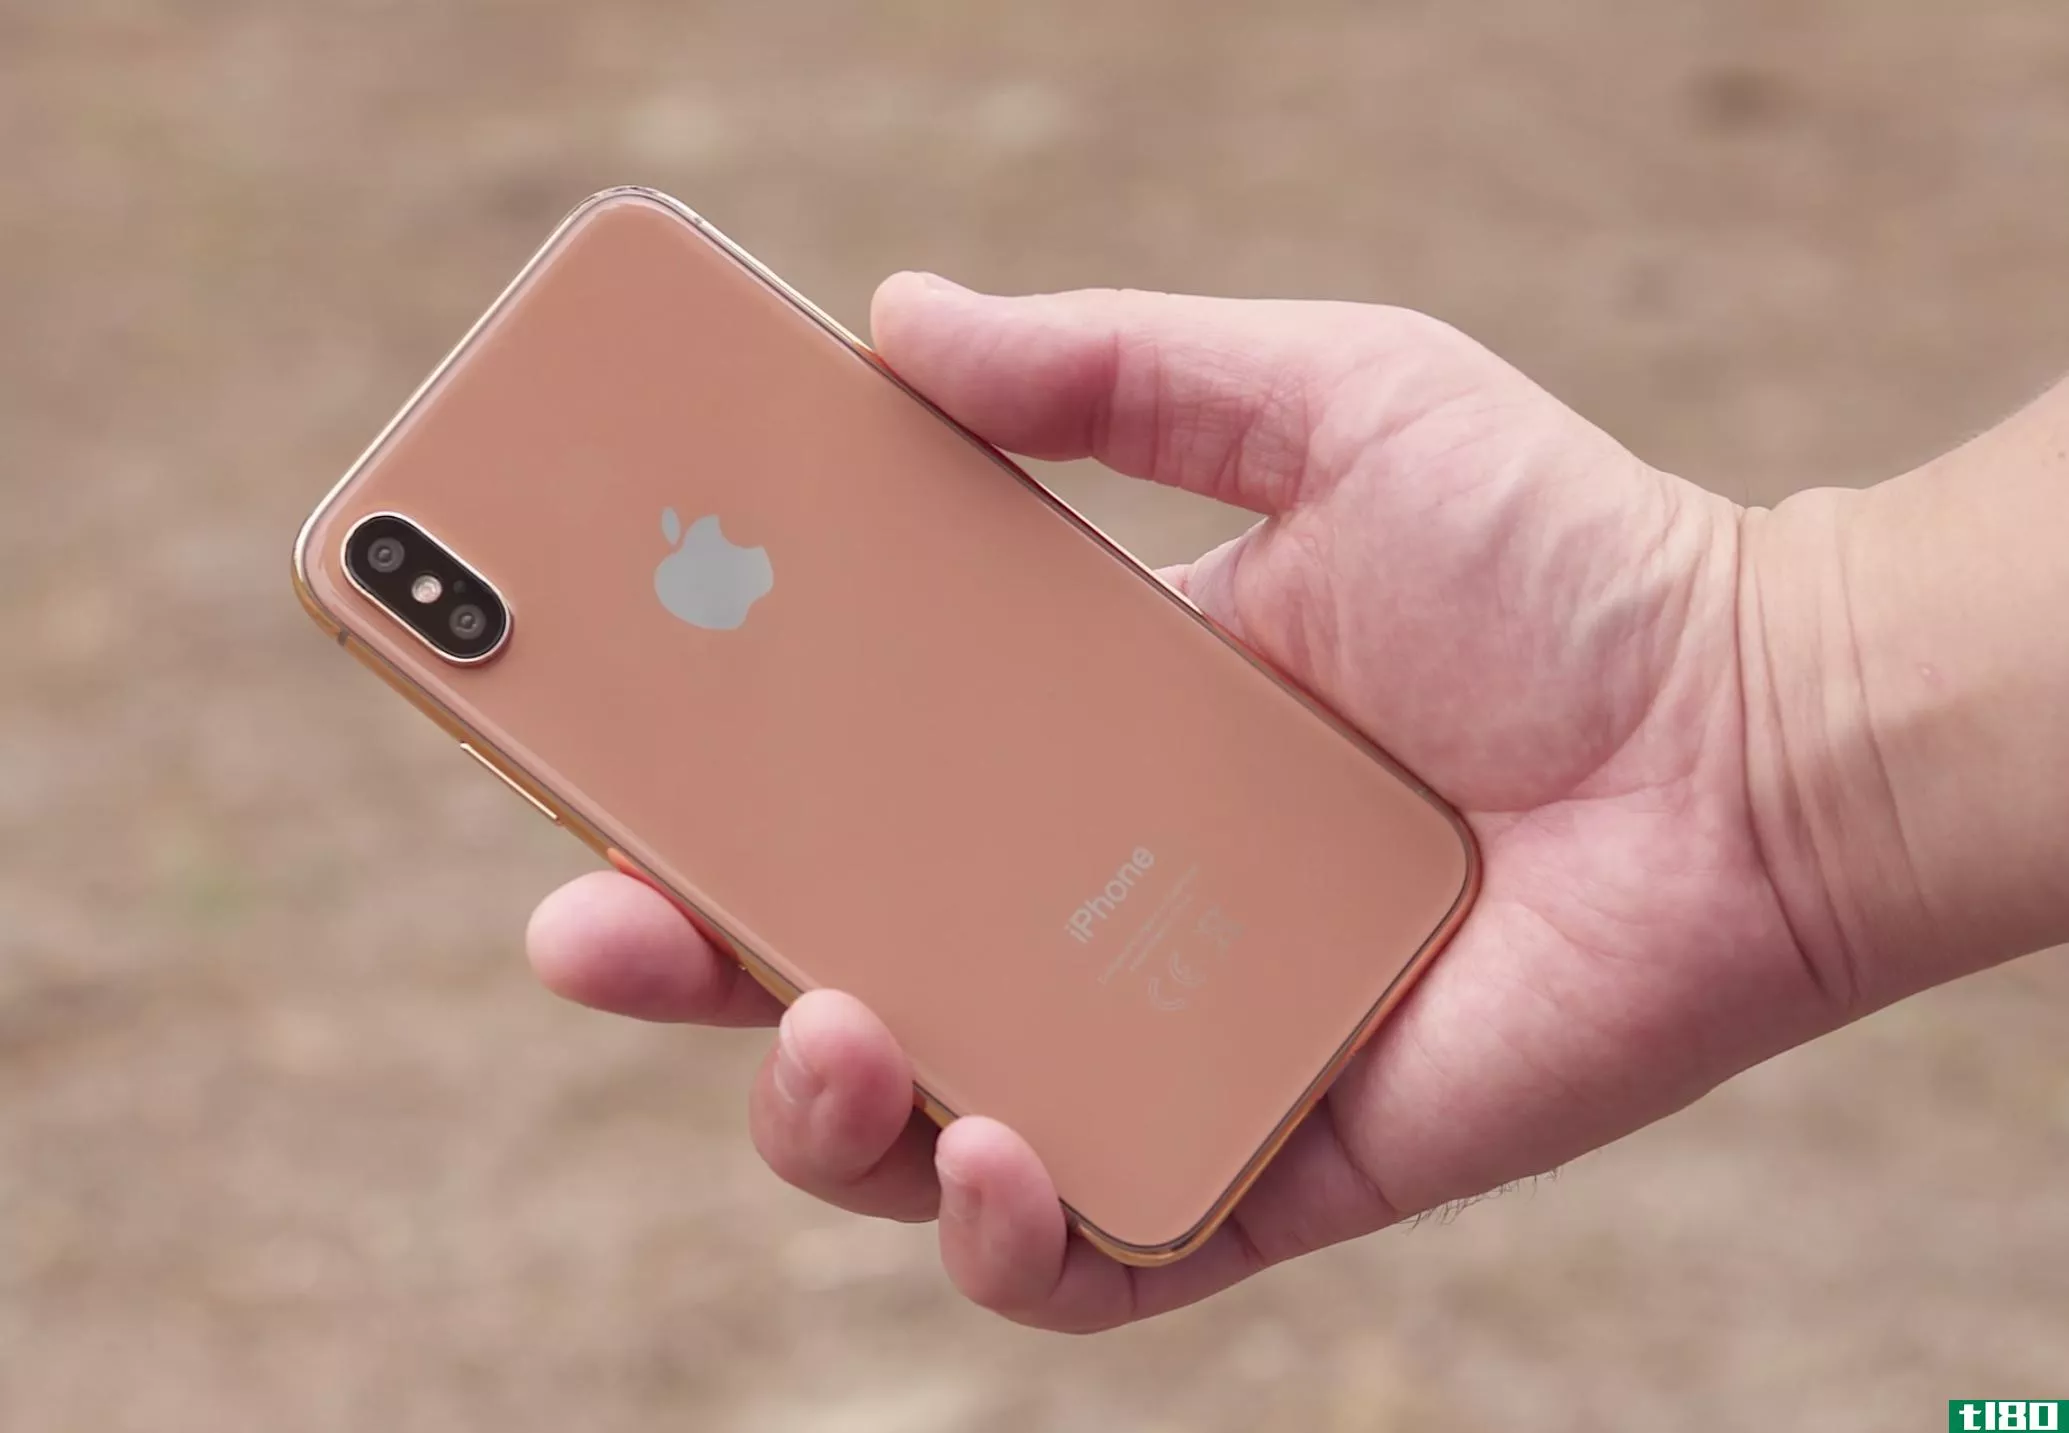 我希望下一部iphone真的是这个难看的粉红青铜色